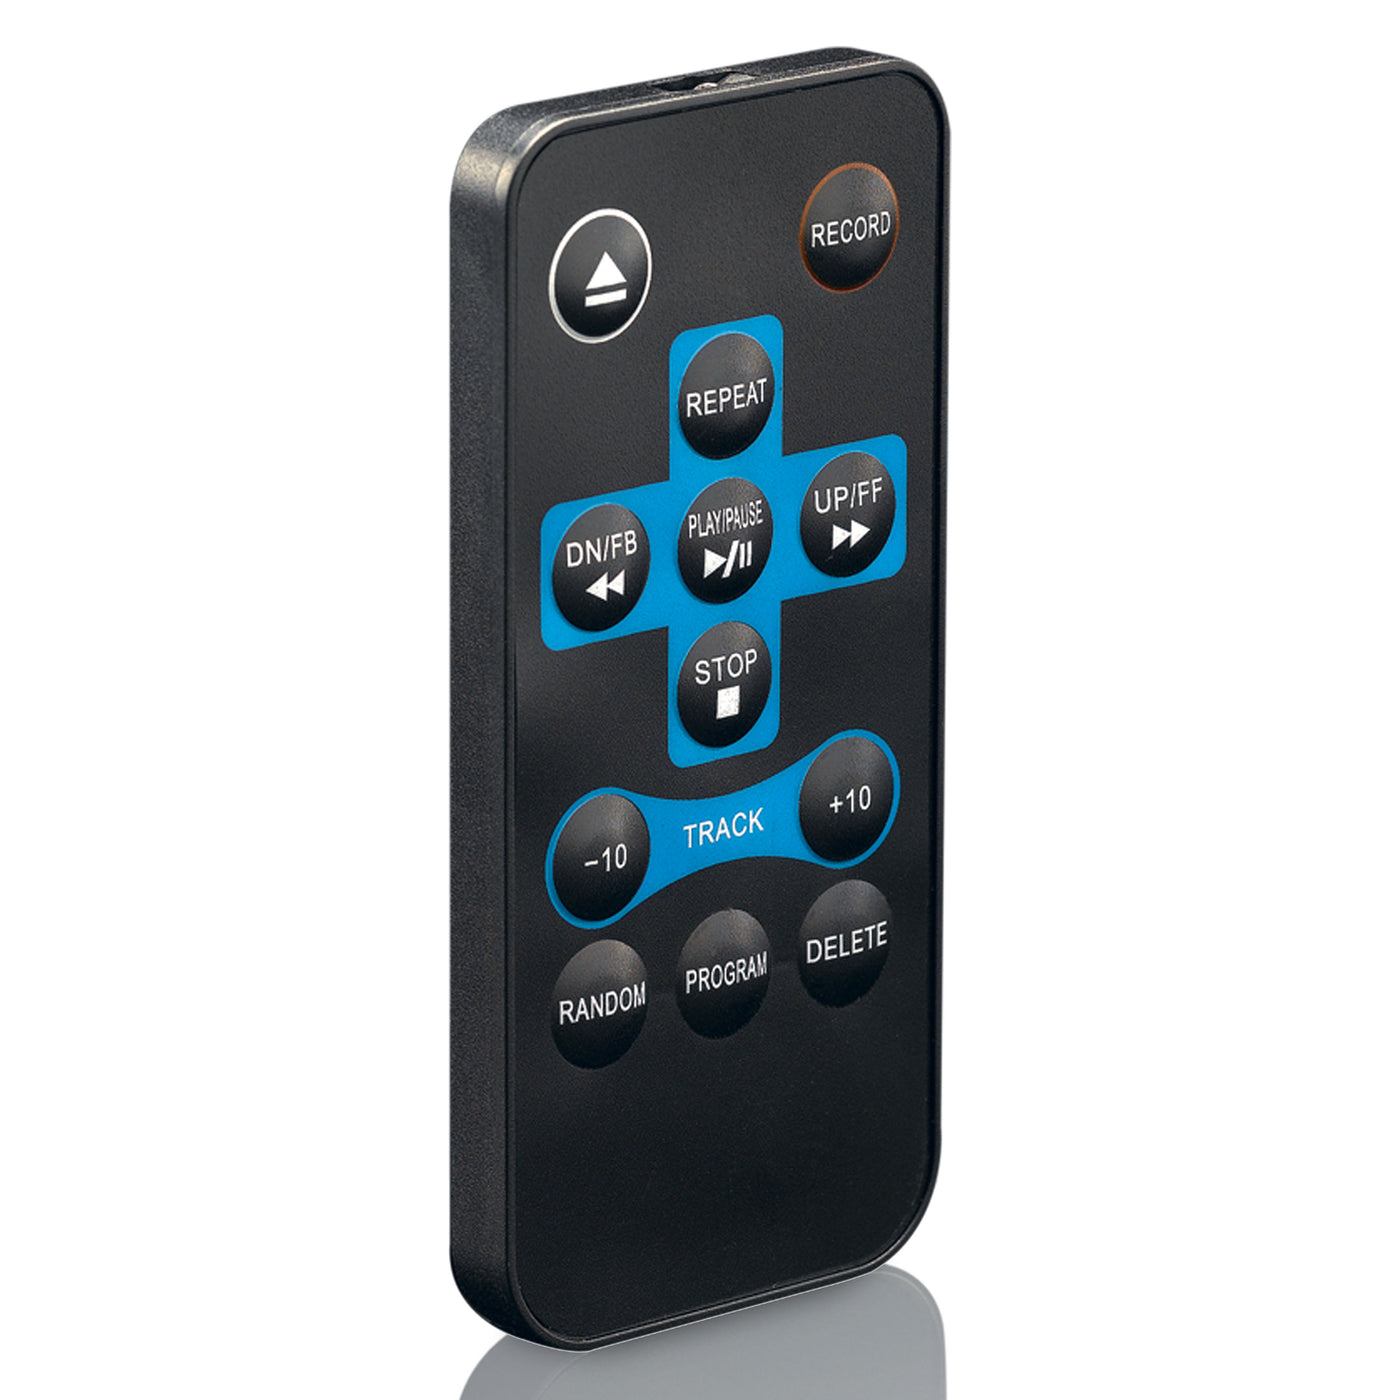 P002377 - Remote control TCD-2550